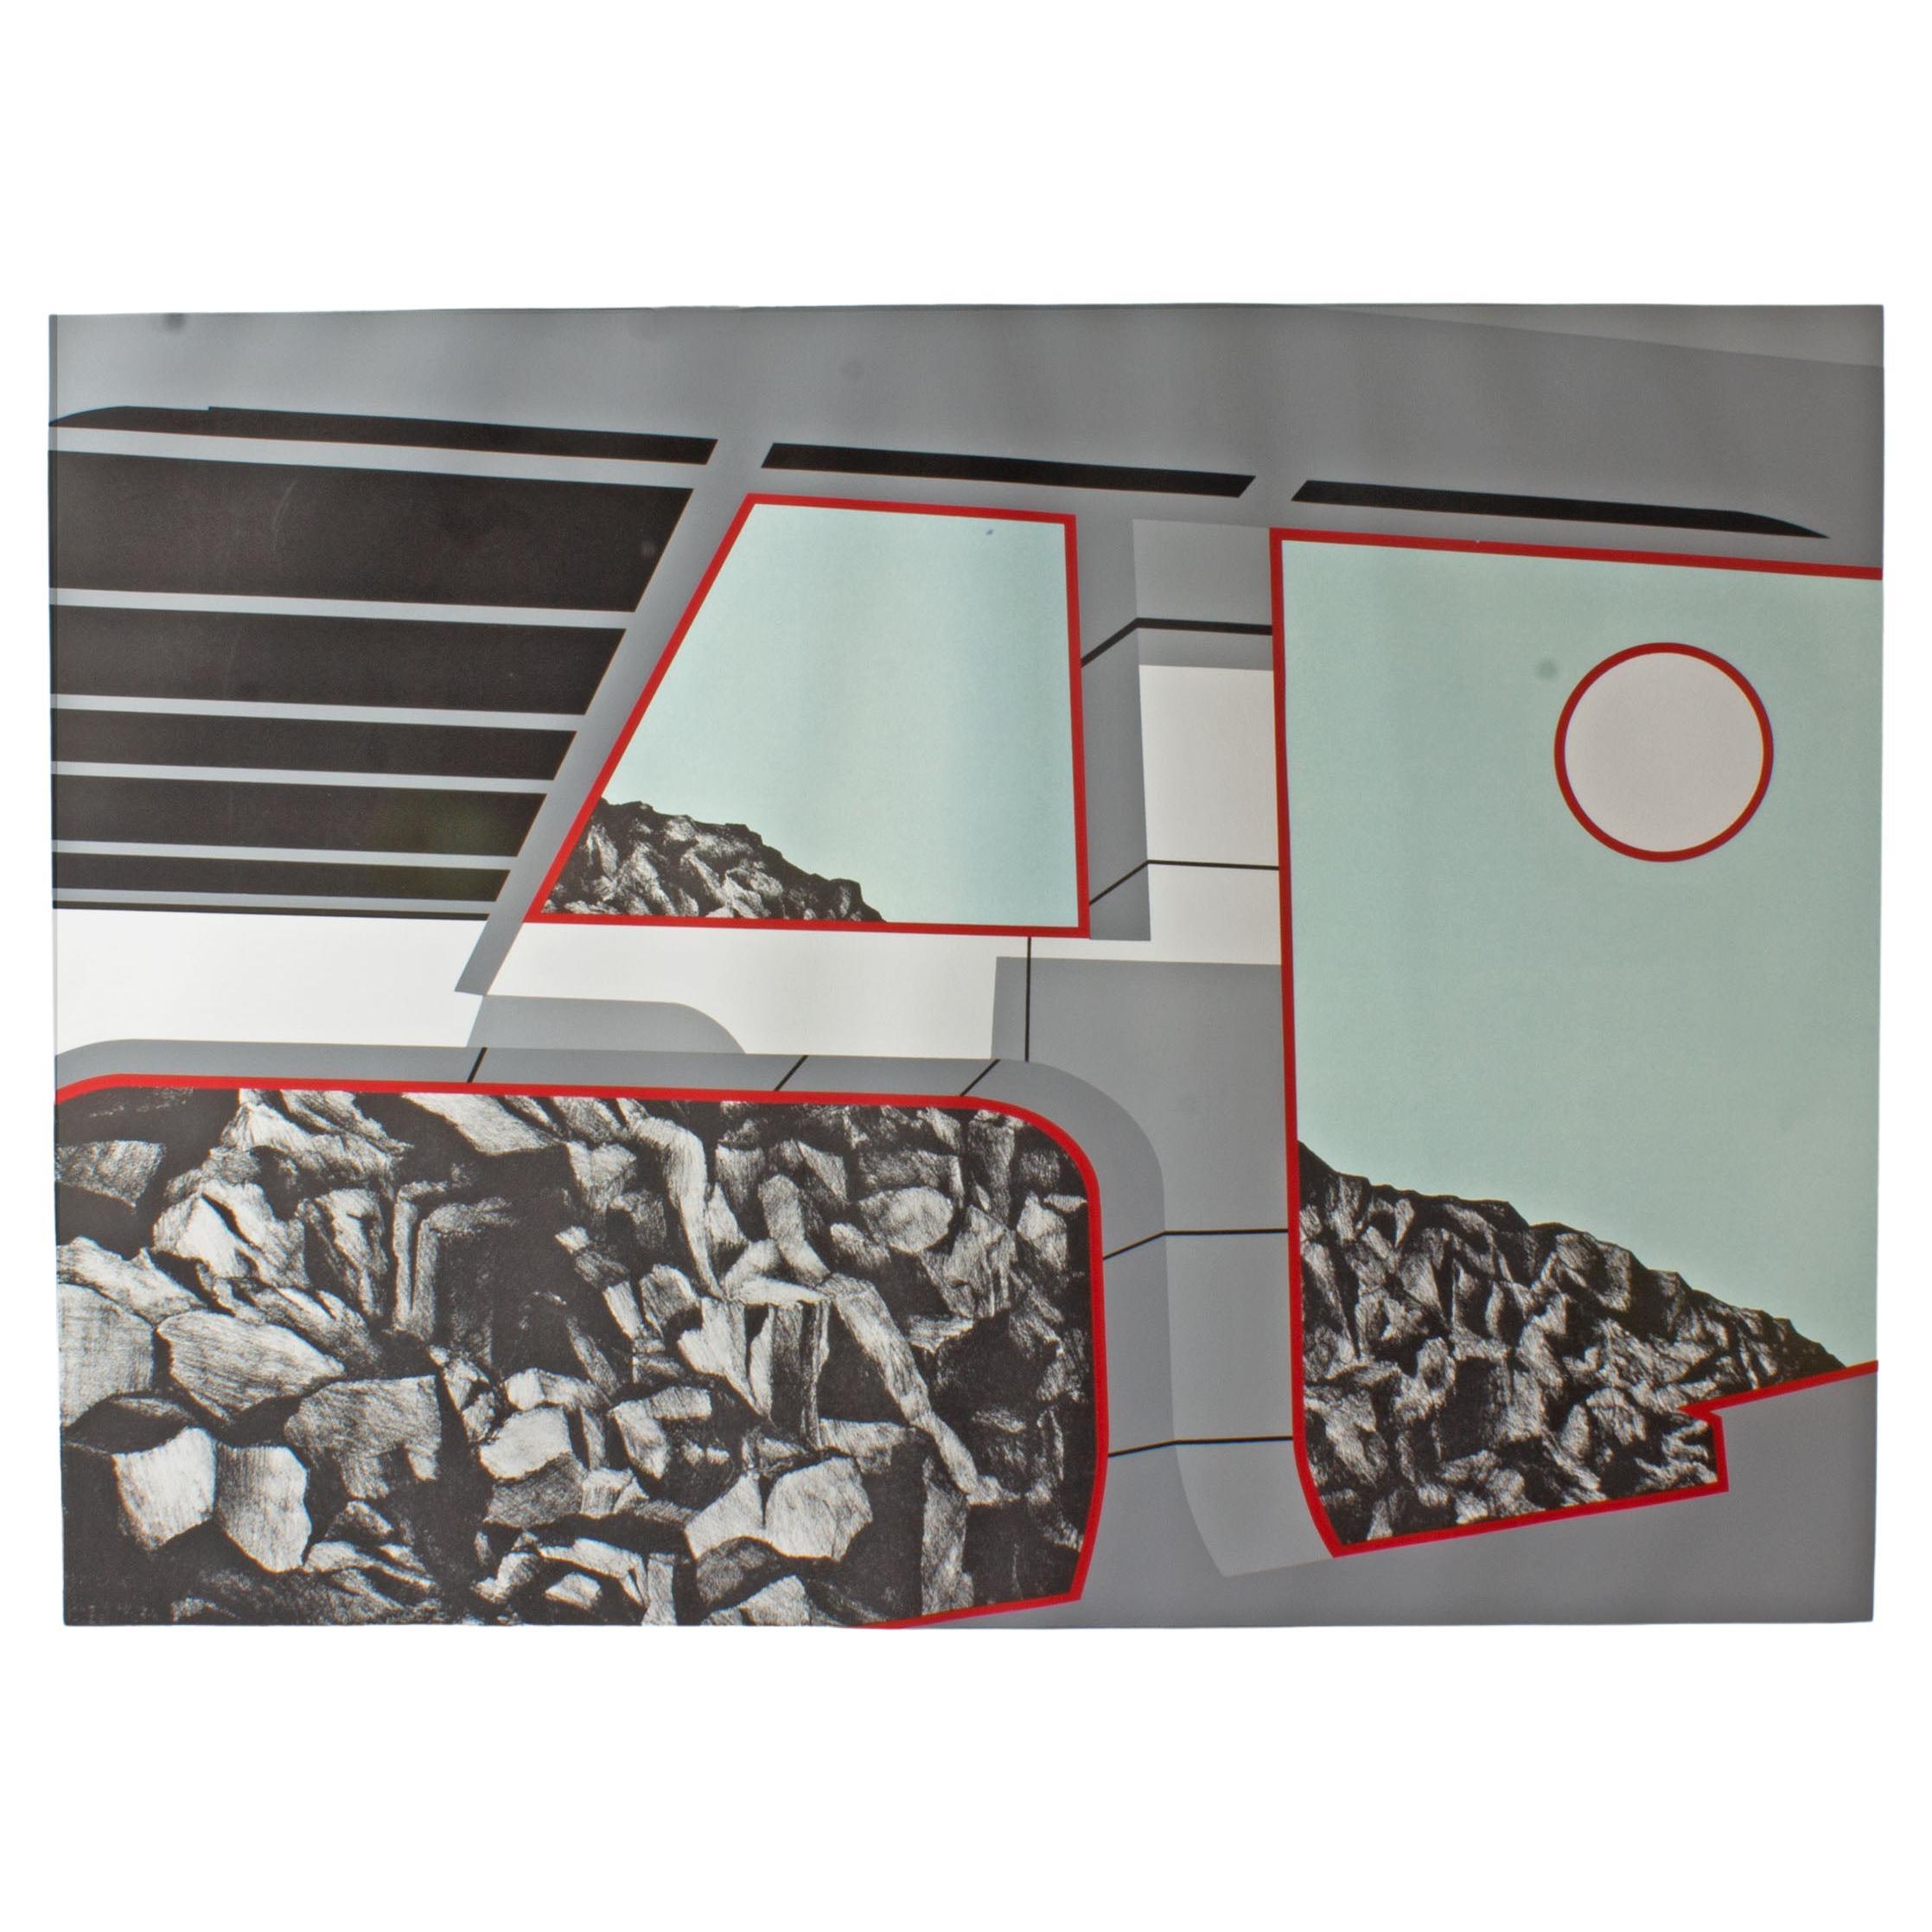 Prueba de artista de 1978, serigrafía sobre papel del artista y grabador estadounidense Allan D'Arcangelo (1930-1998). Esta impresión Pop Art en azul claro, gris, negro, rojo y blanco representa una vista rocosa desde el interior de un vehículo de